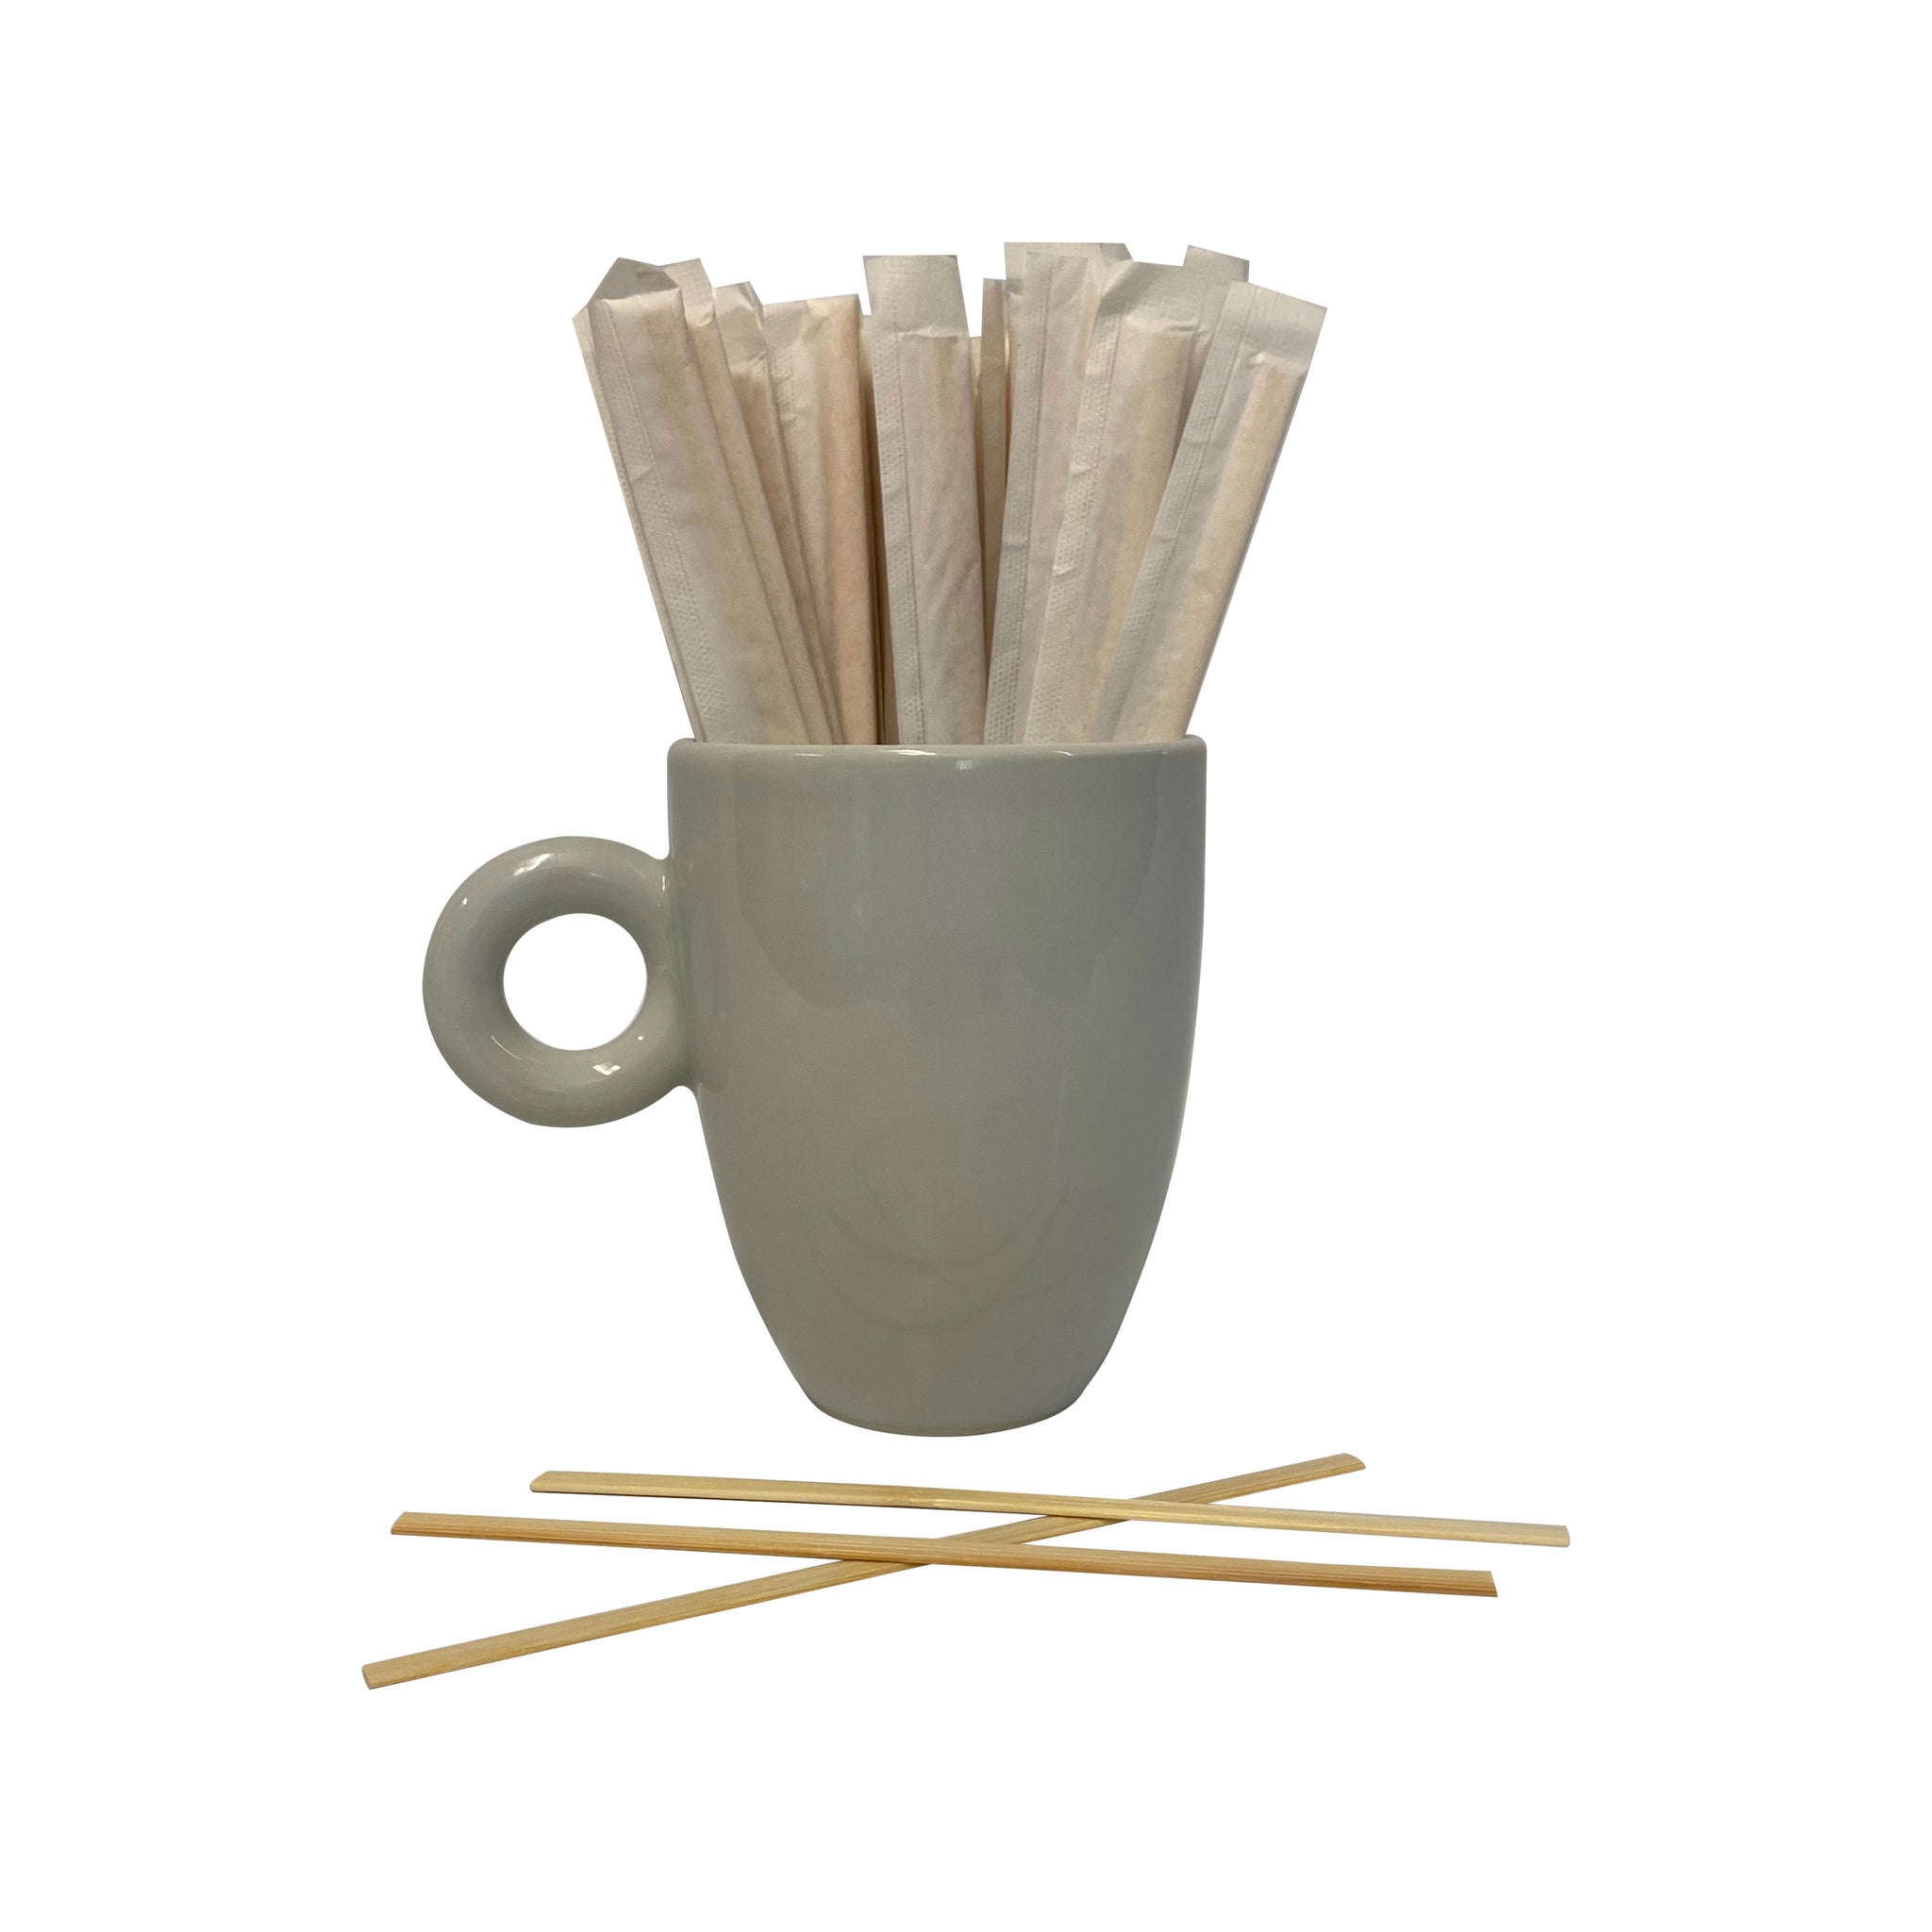 Wooden Coffee Stir Sticks 5.5